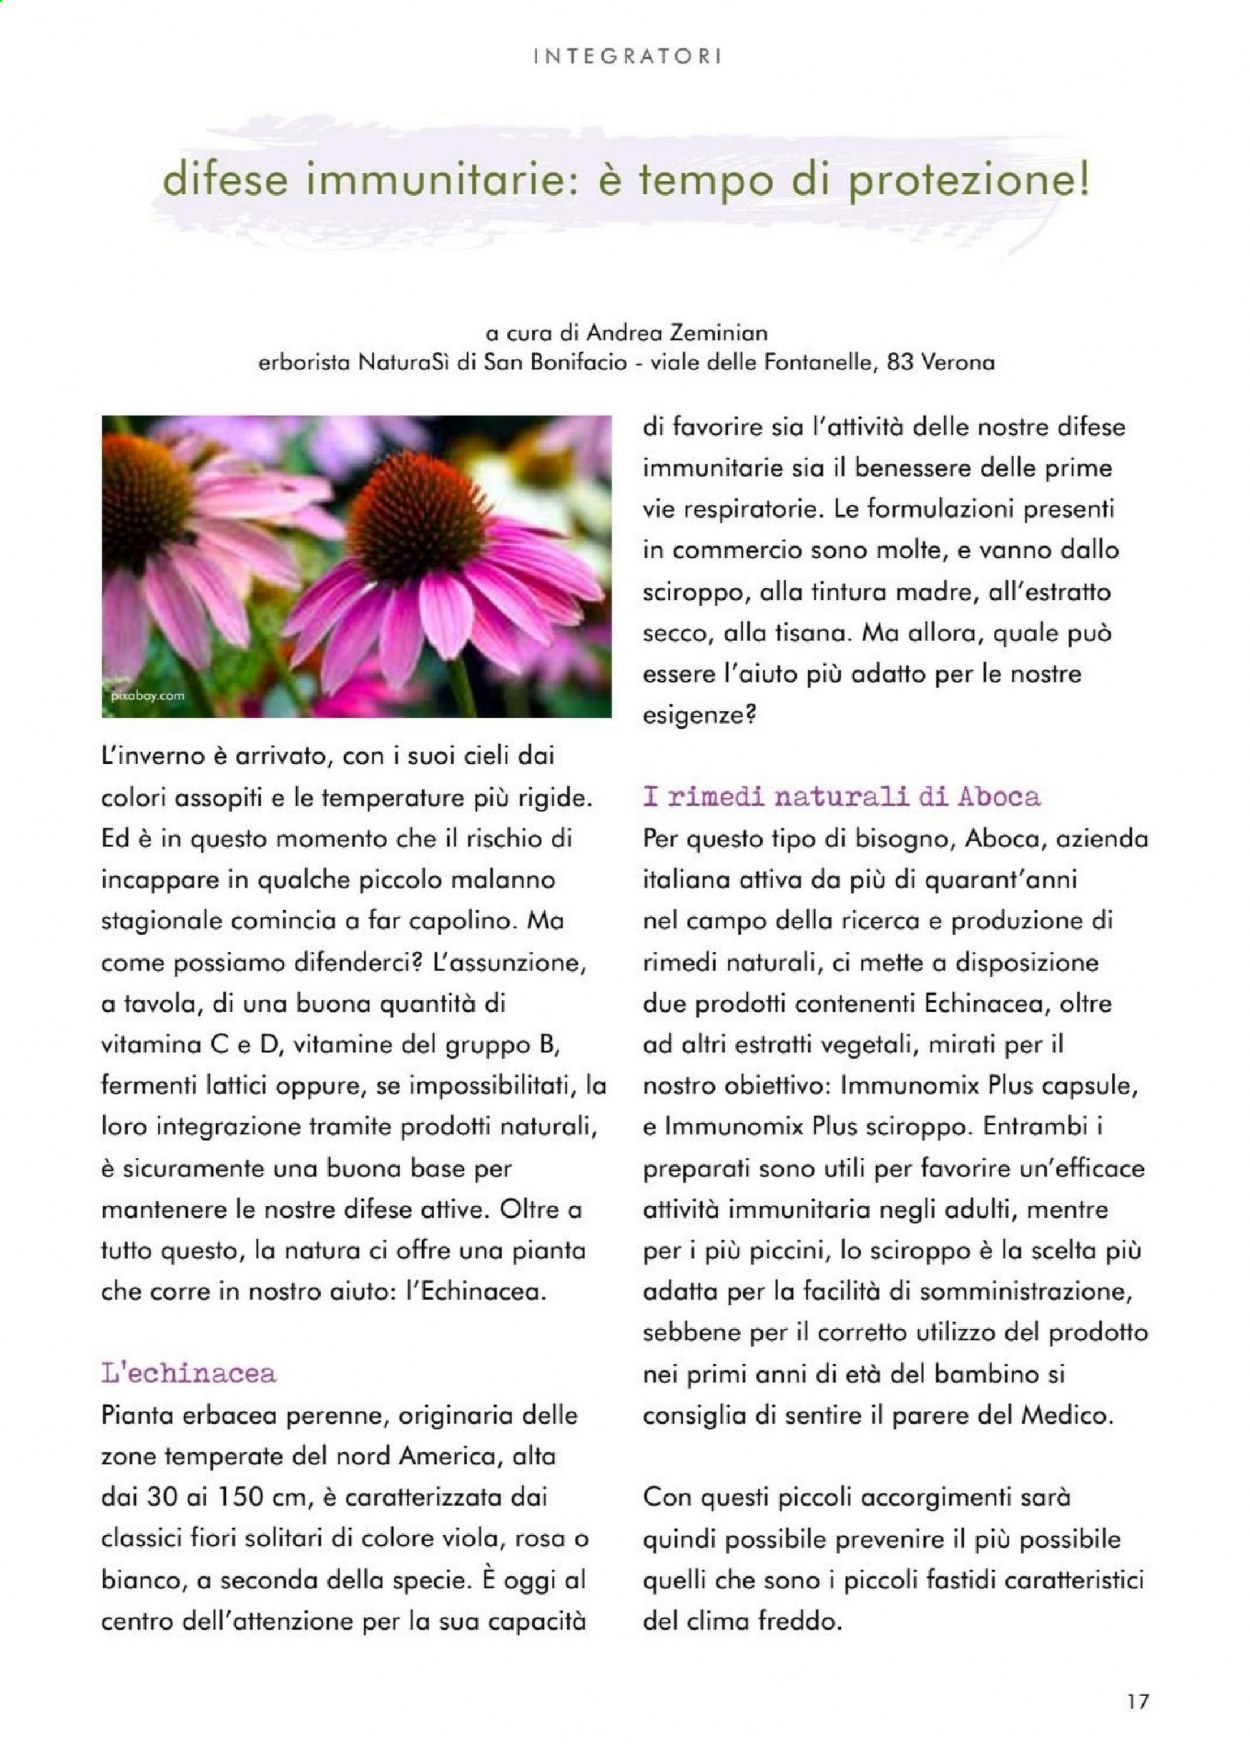 thumbnail - Volantino Natura Sì - Prodotti in offerta - sciroppo, tisana, Immunomix, Aboca. Pagina 17.